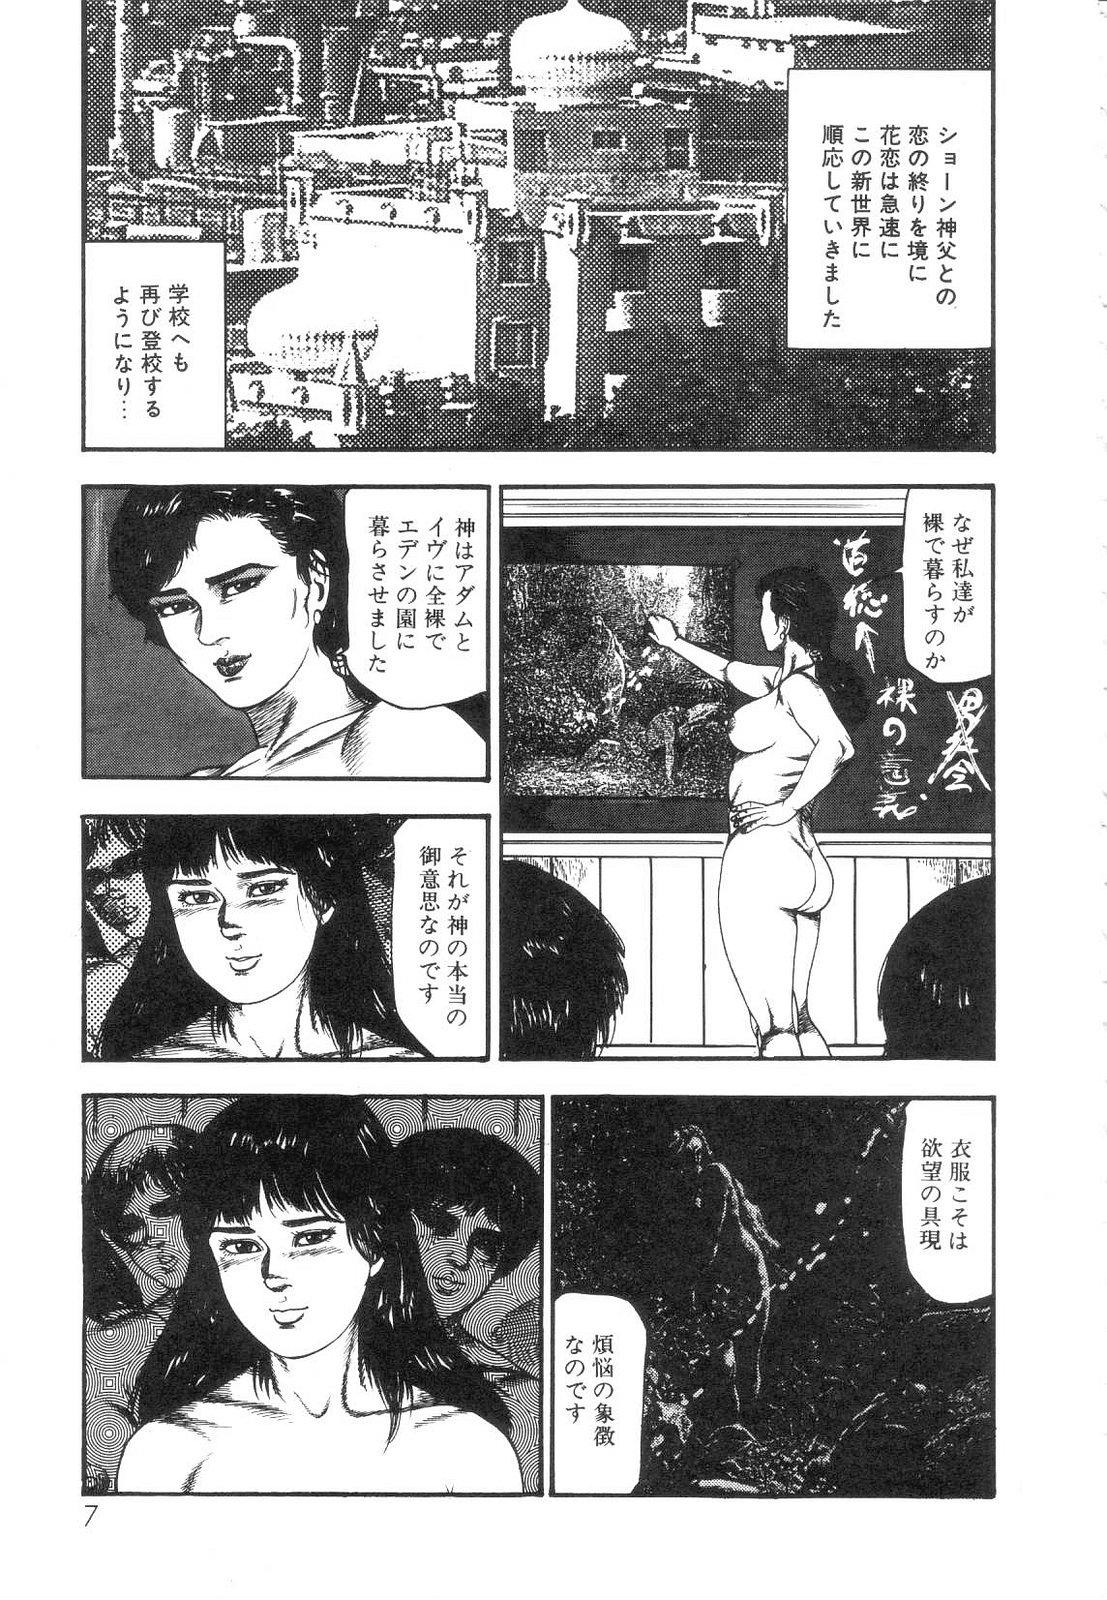 Shiro no Mokushiroku Vol. 5 - Ninshoujo Erika no Shou 8